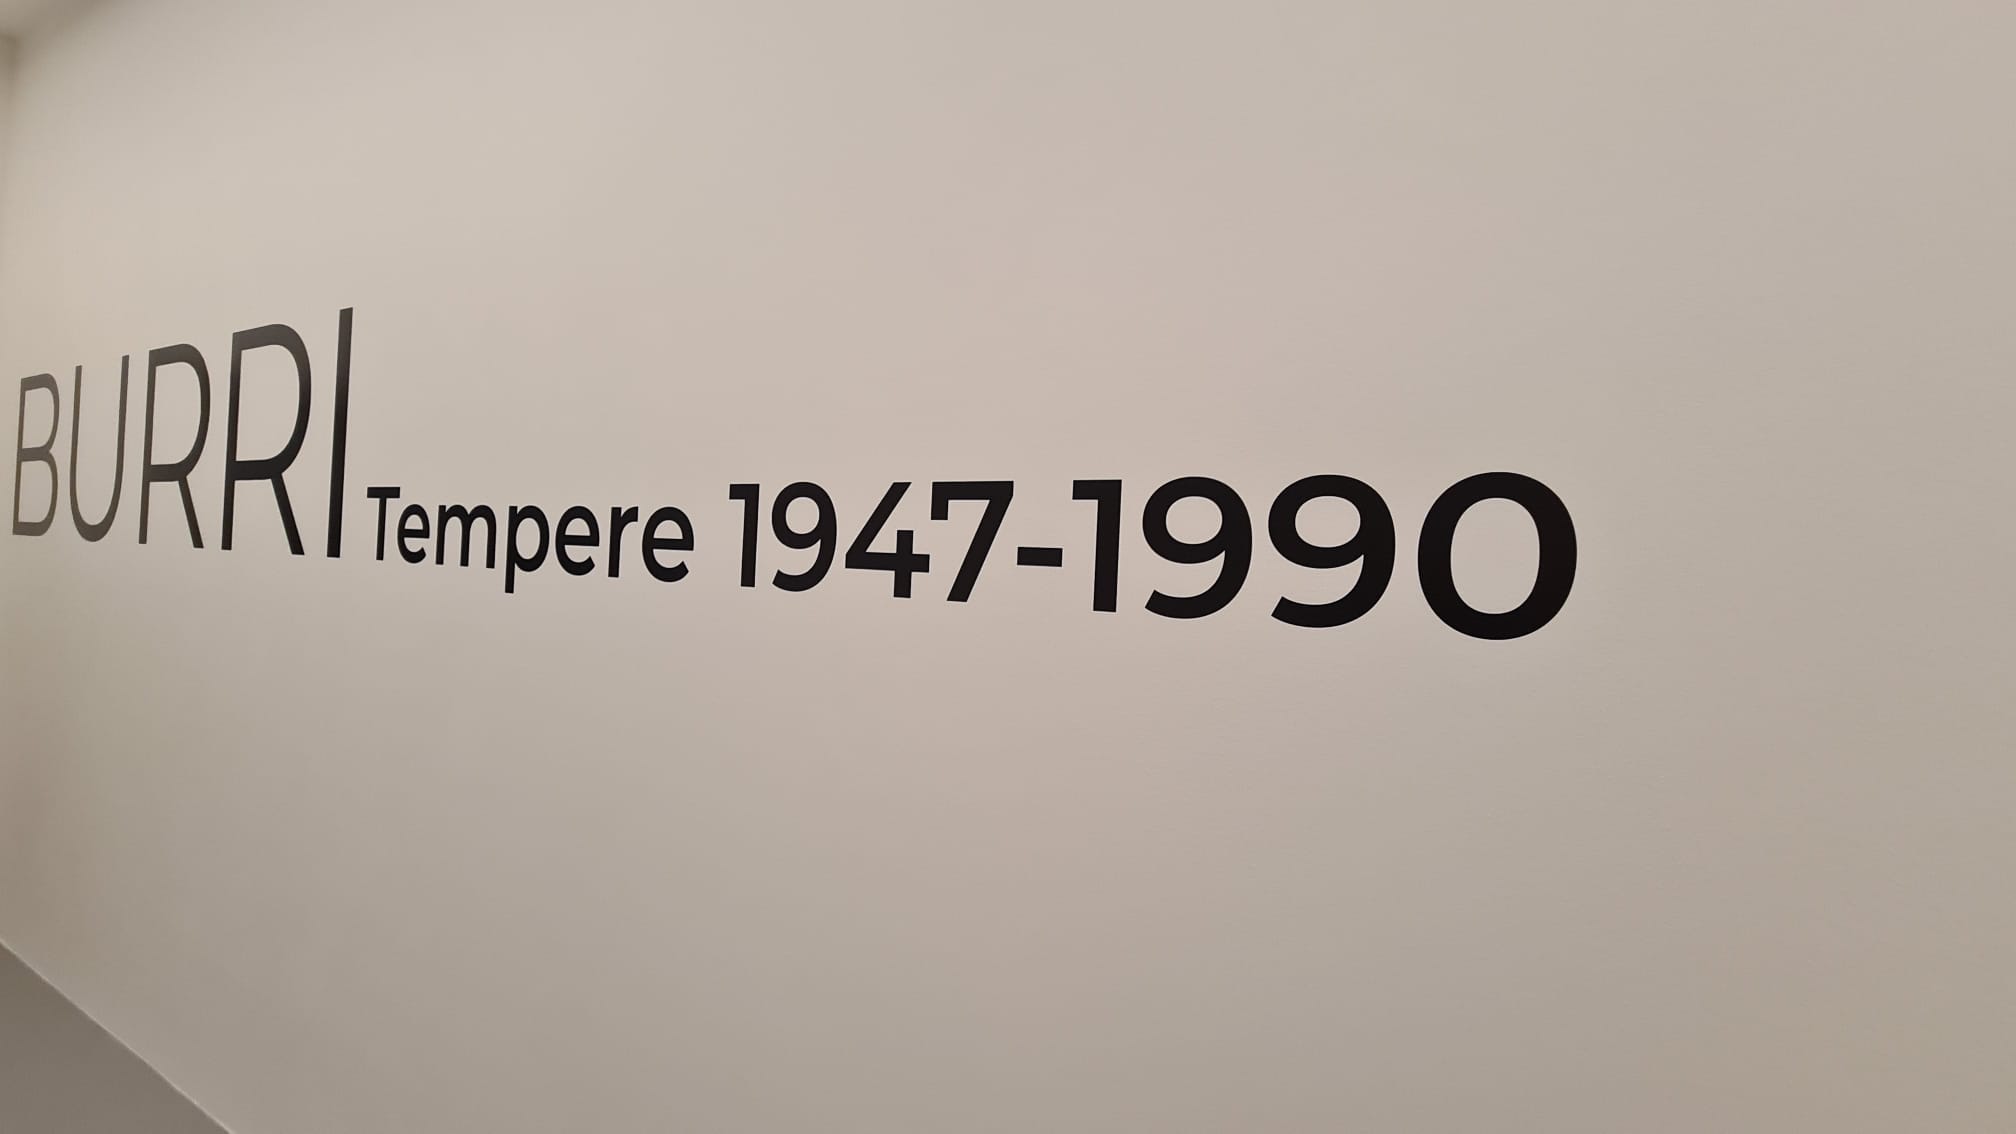 Città di Castello - Apre i battenti la mostra: “Burri. Tempere 1947-1990” 